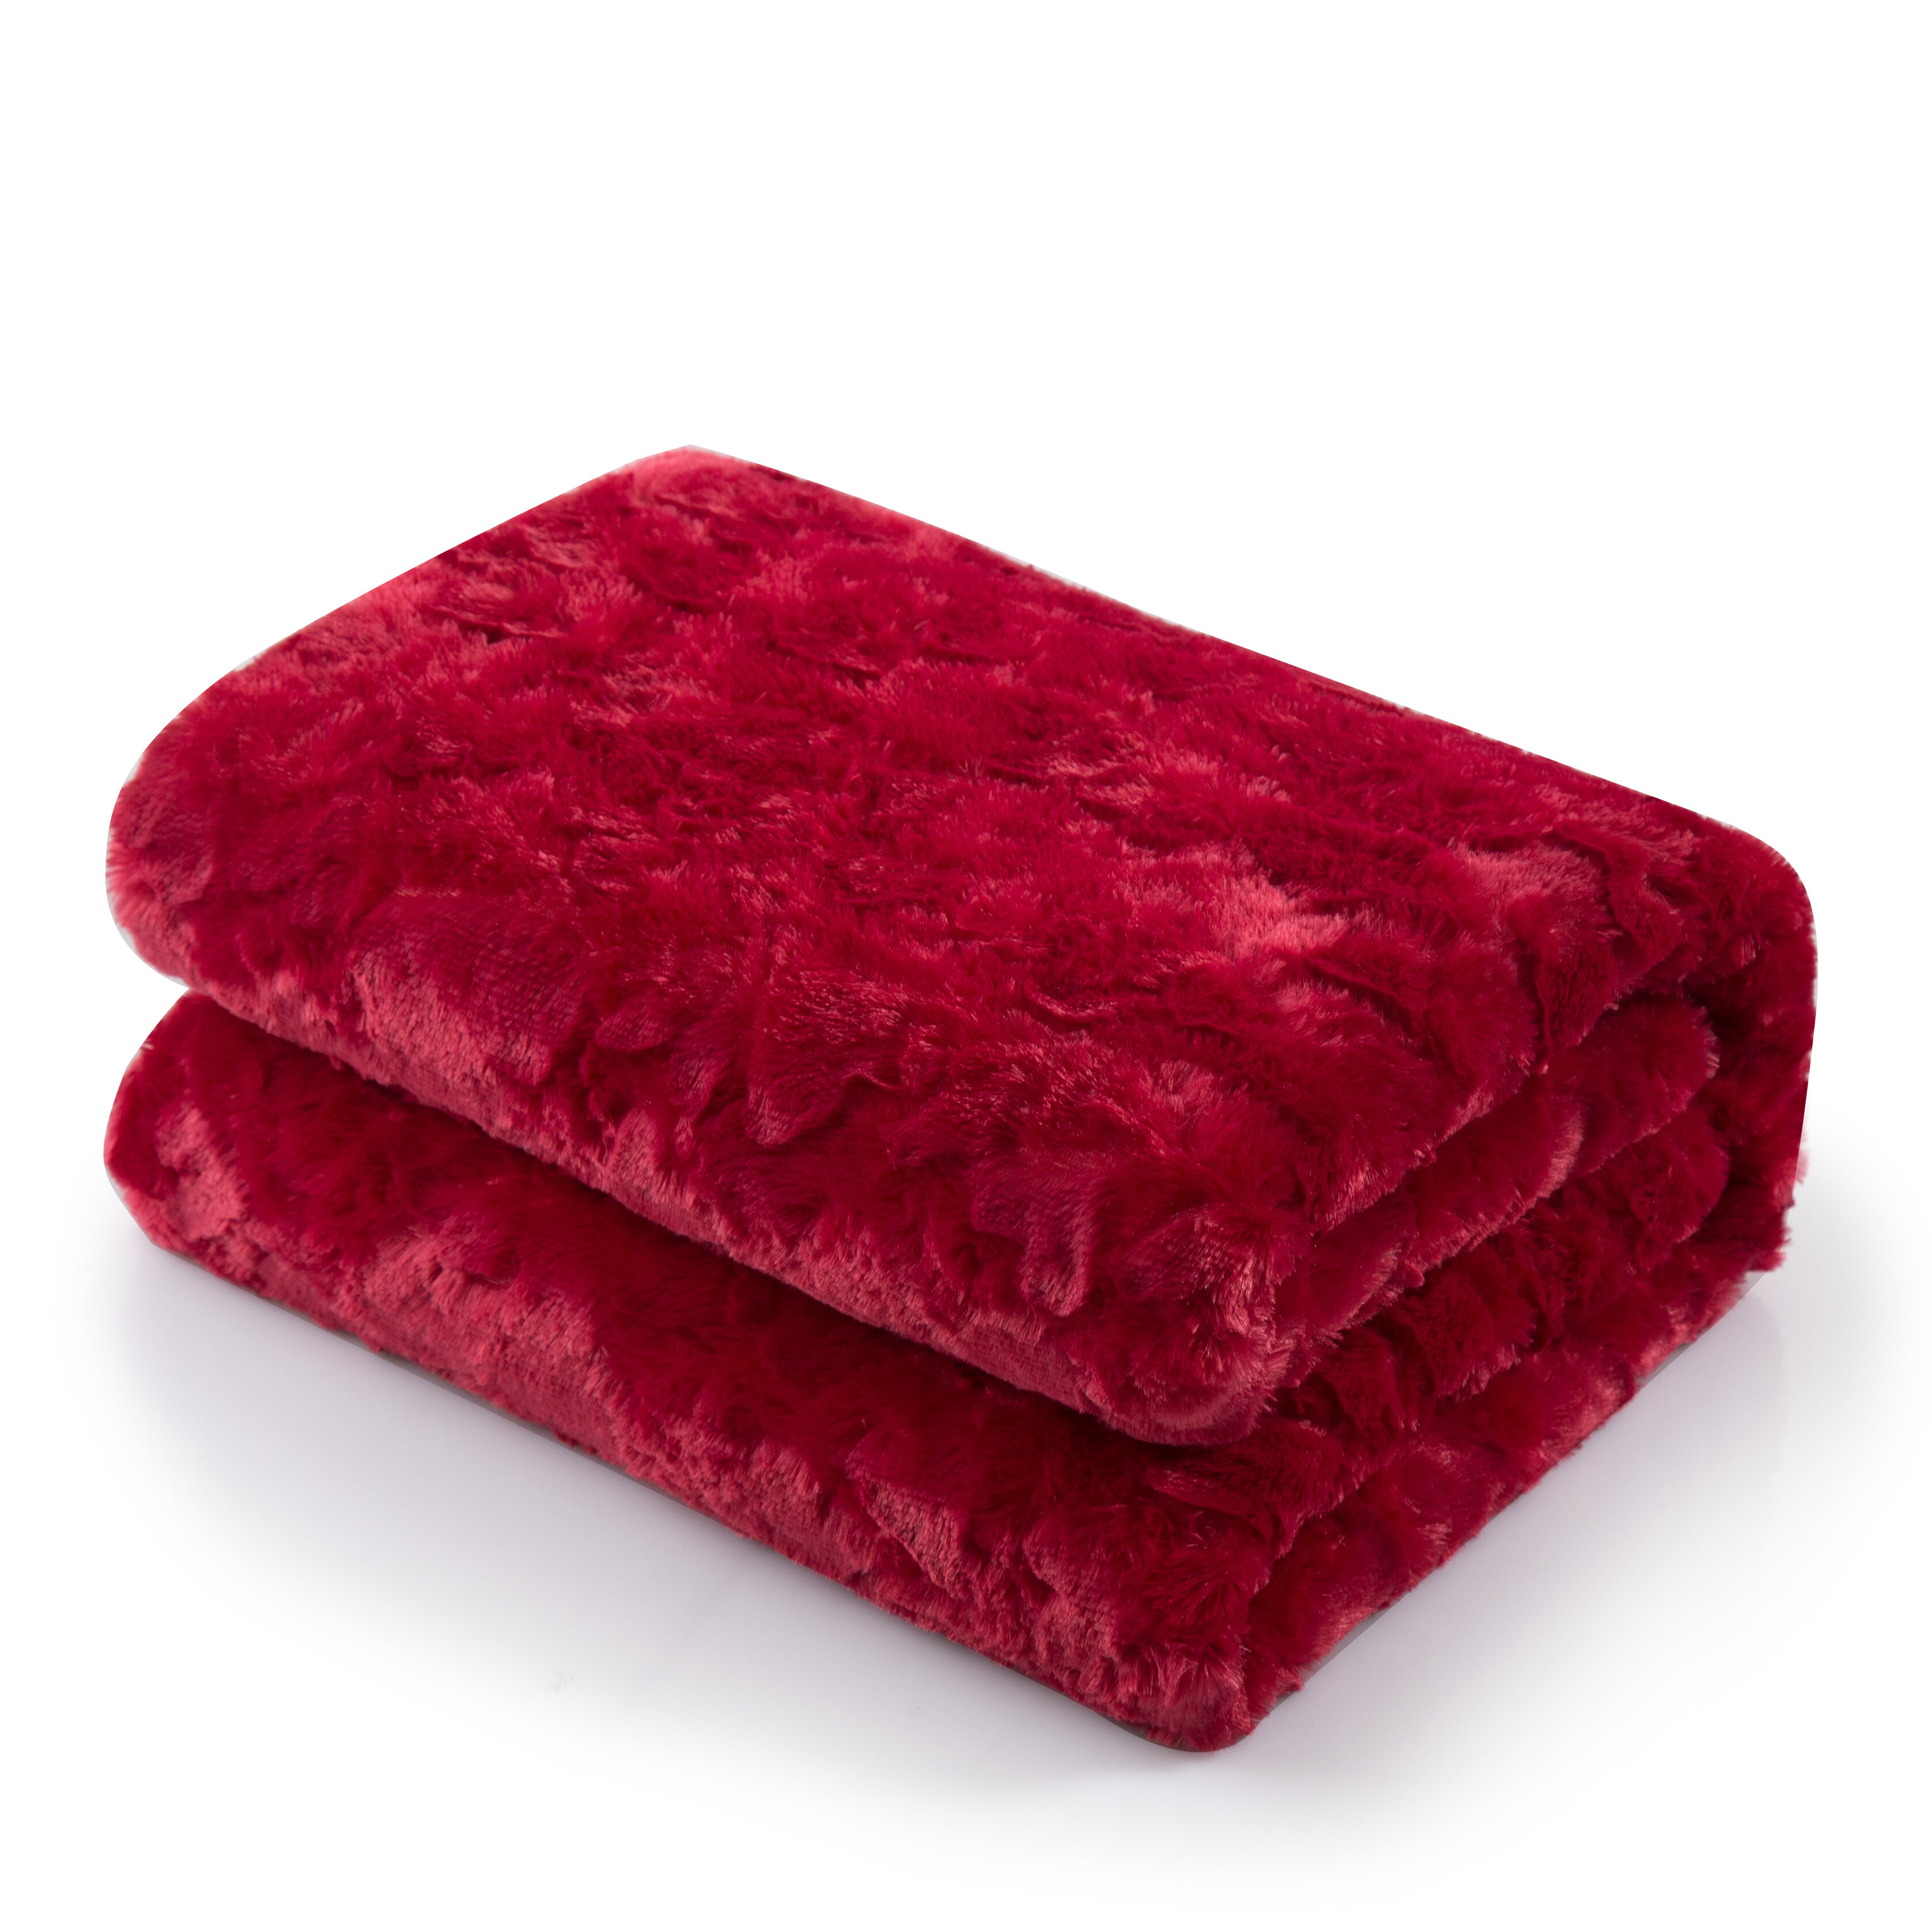 red fleece blanket full